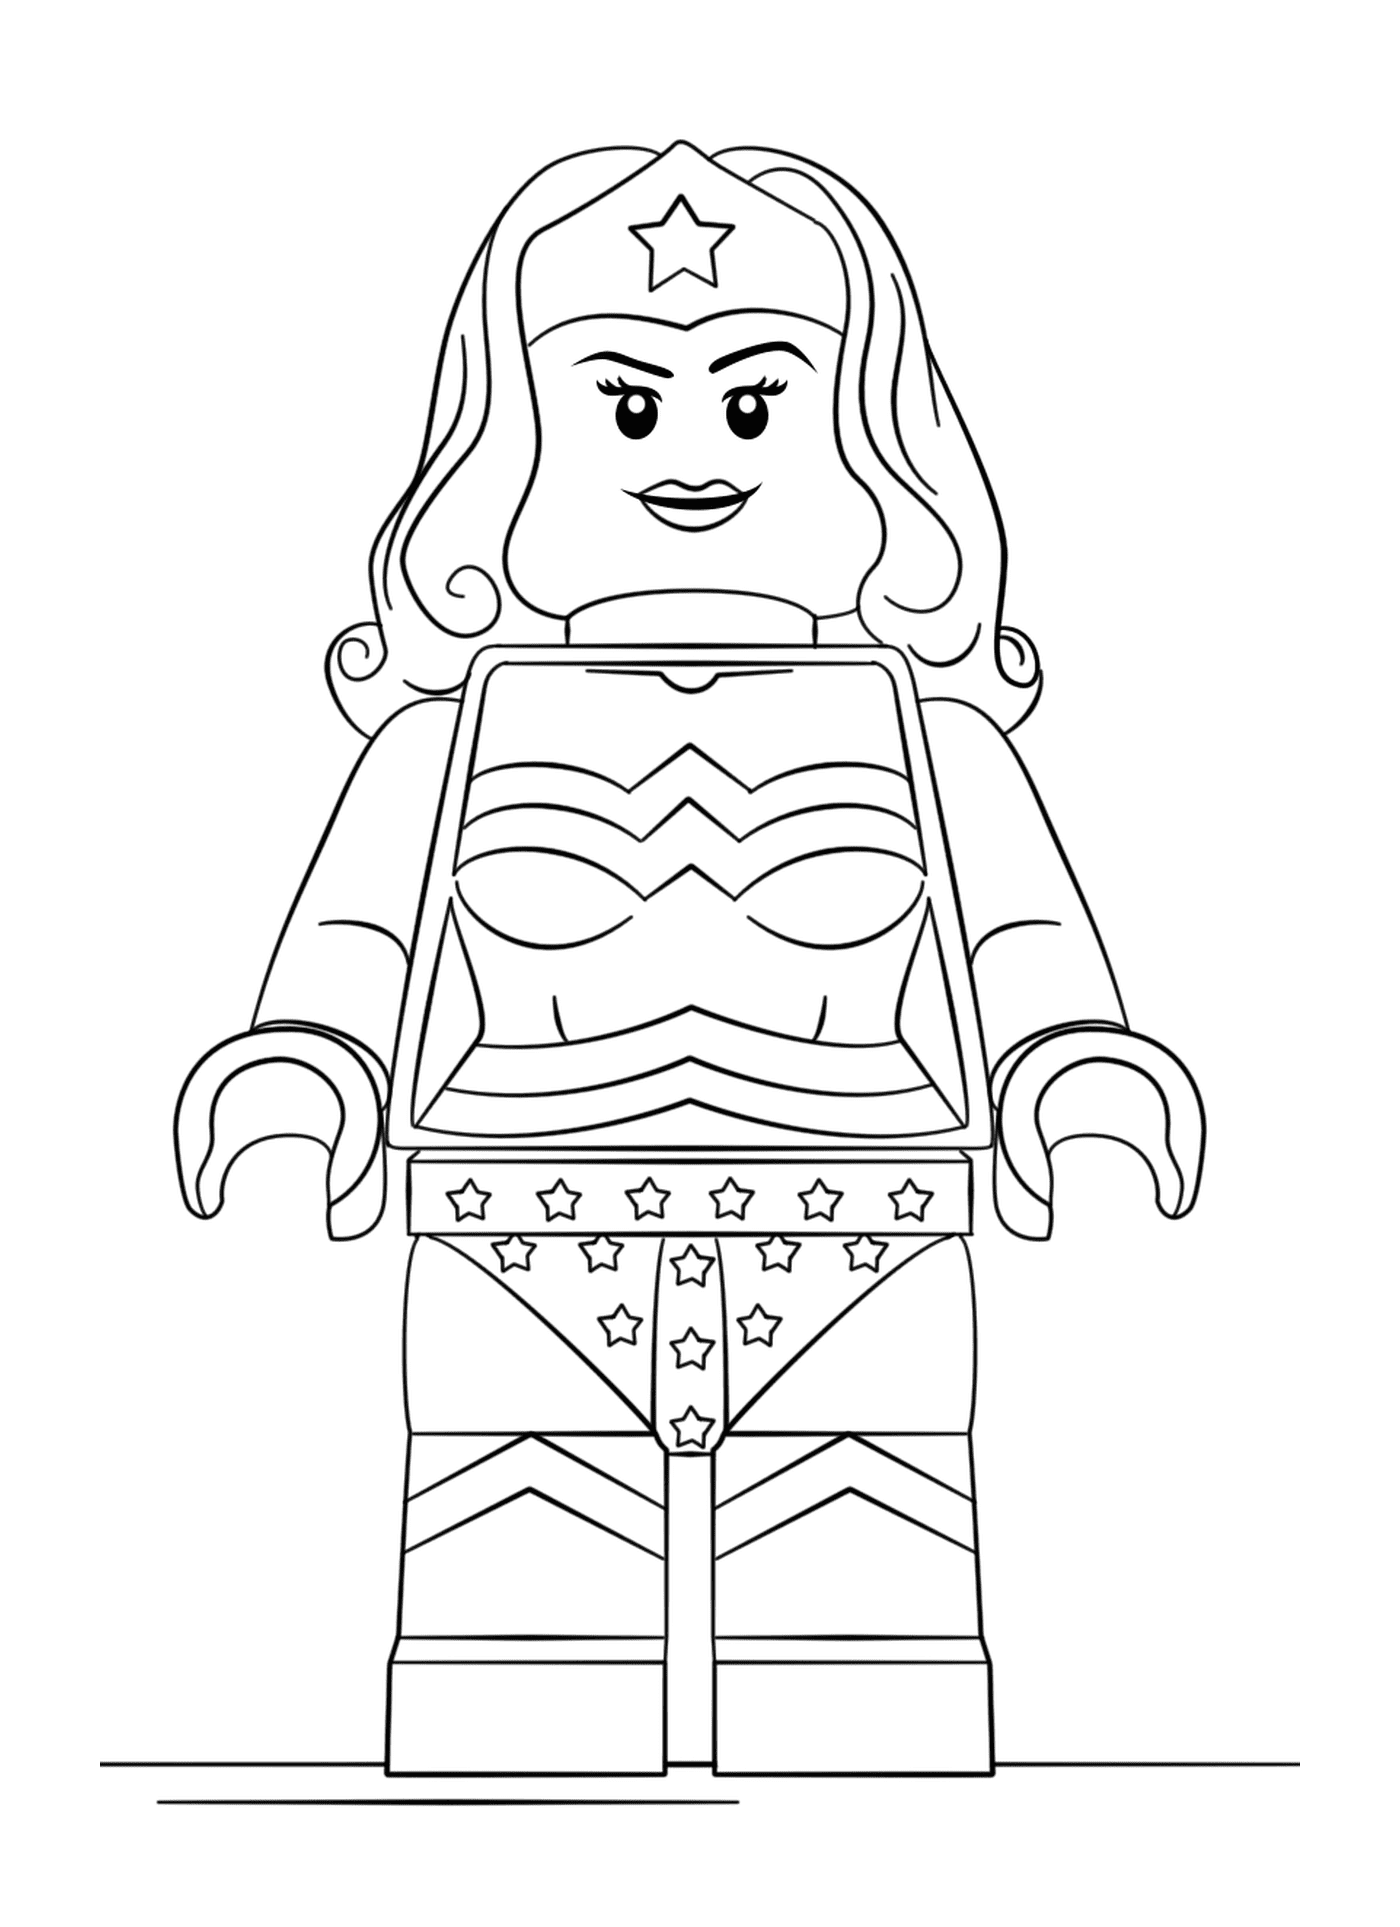  Wonder Woman in Lego 